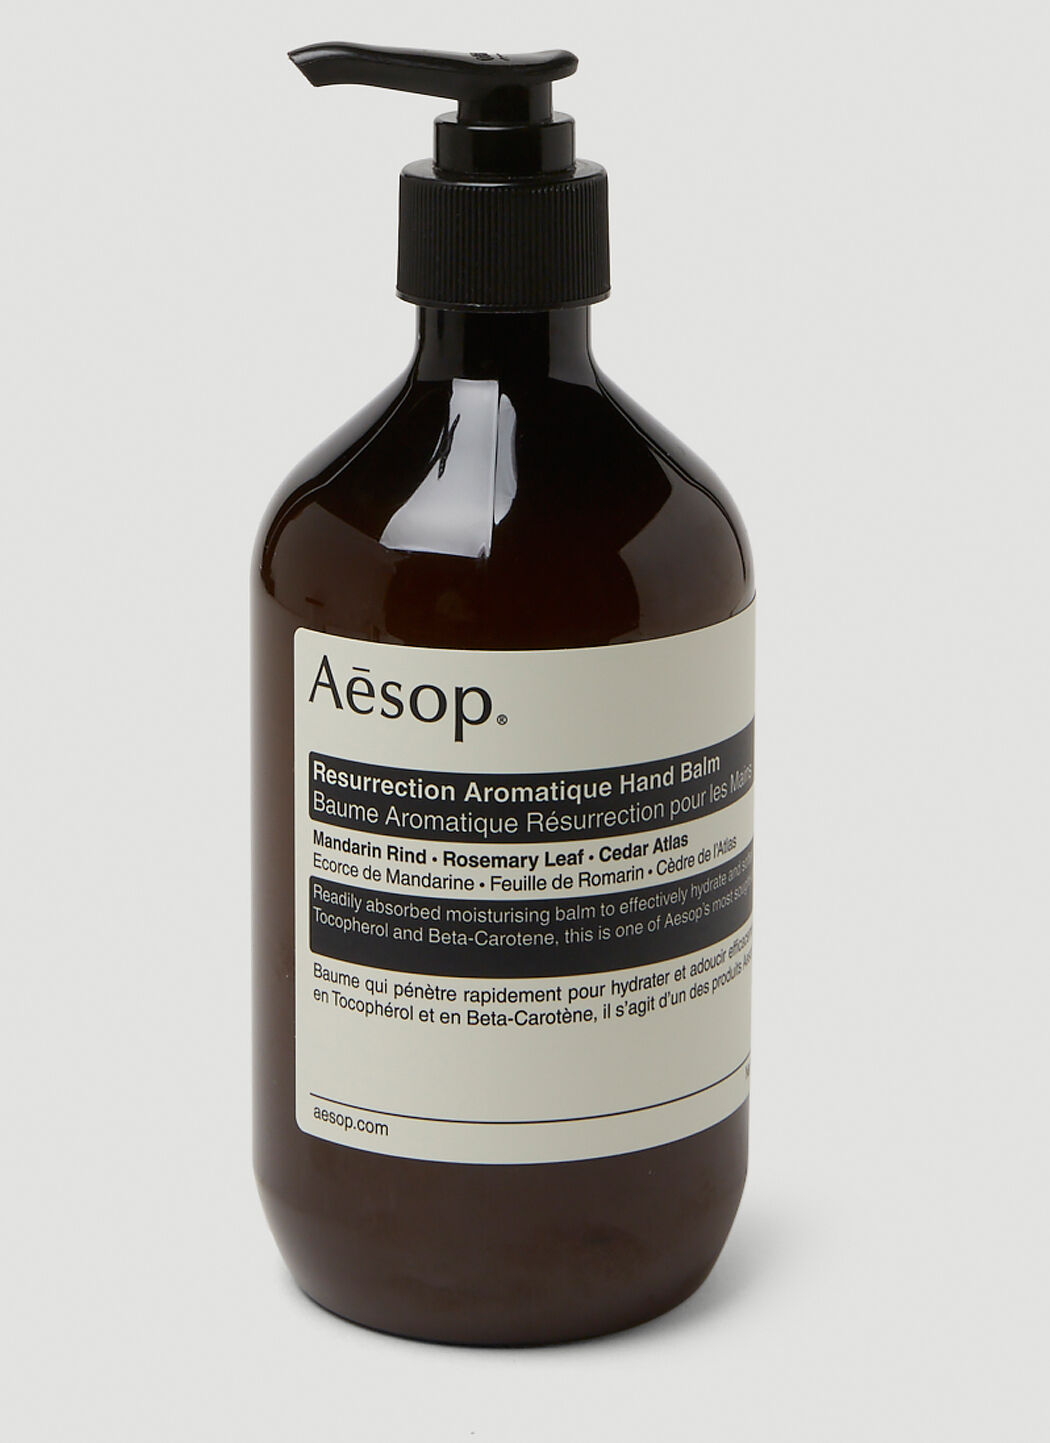 Aesop Resurrection Aromatique Hand Balm Brown sop0349027